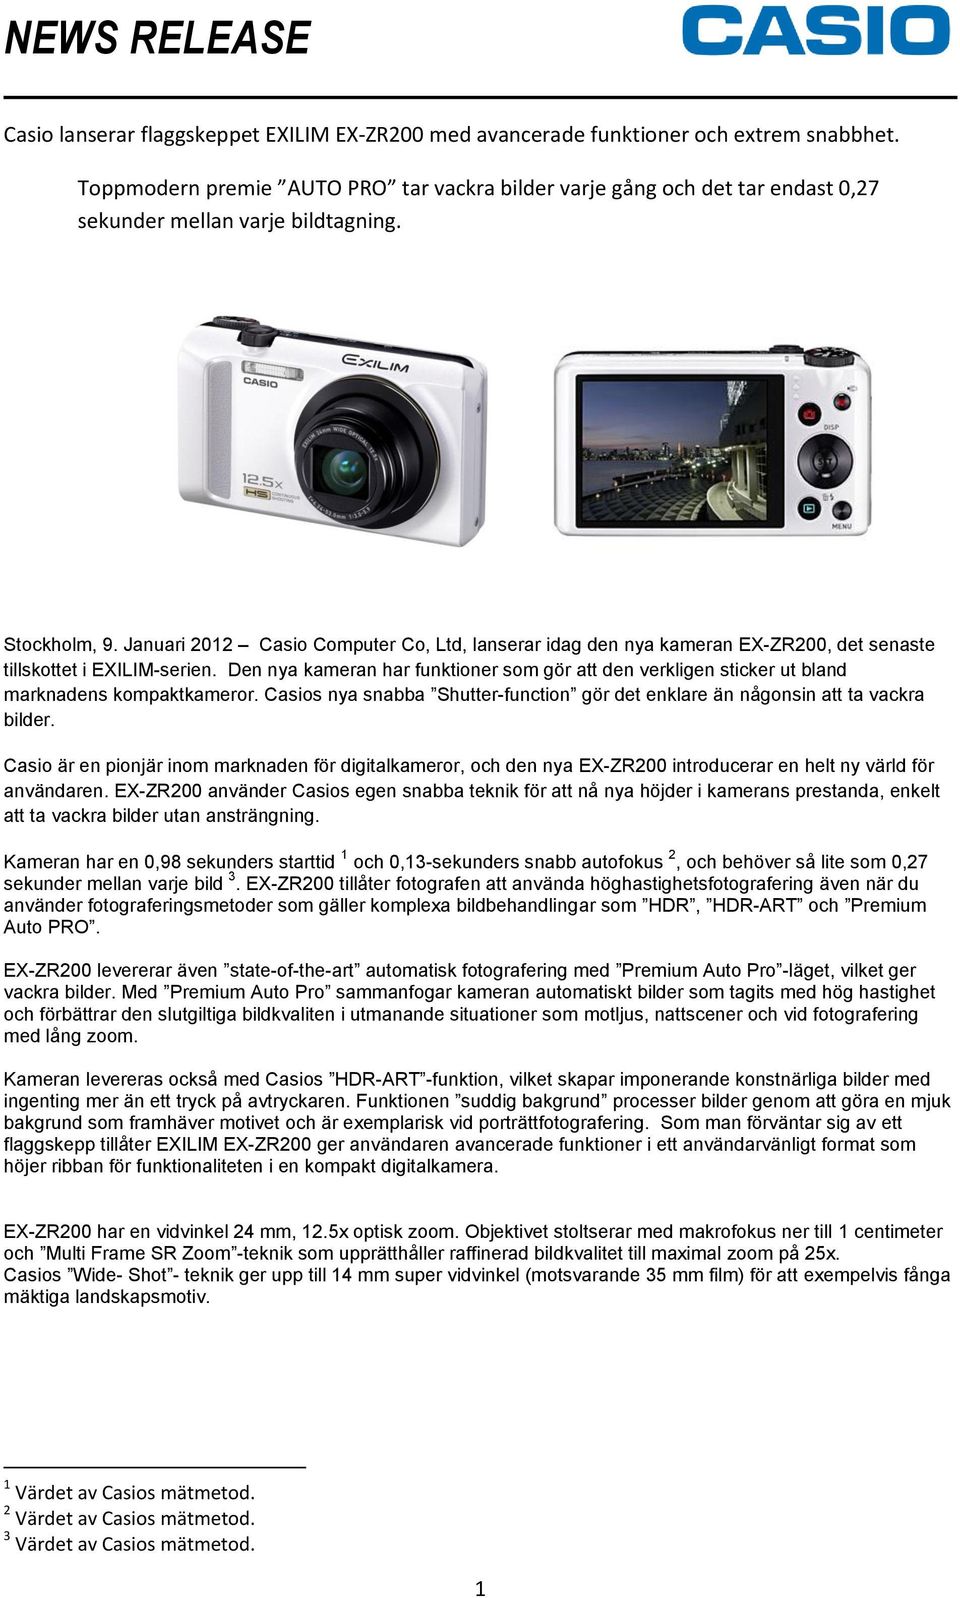 Januari 2012 Casio Computer Co, Ltd, lanserar idag den nya kameran EX-ZR200, det senaste tillskottet i EXILIM-serien.